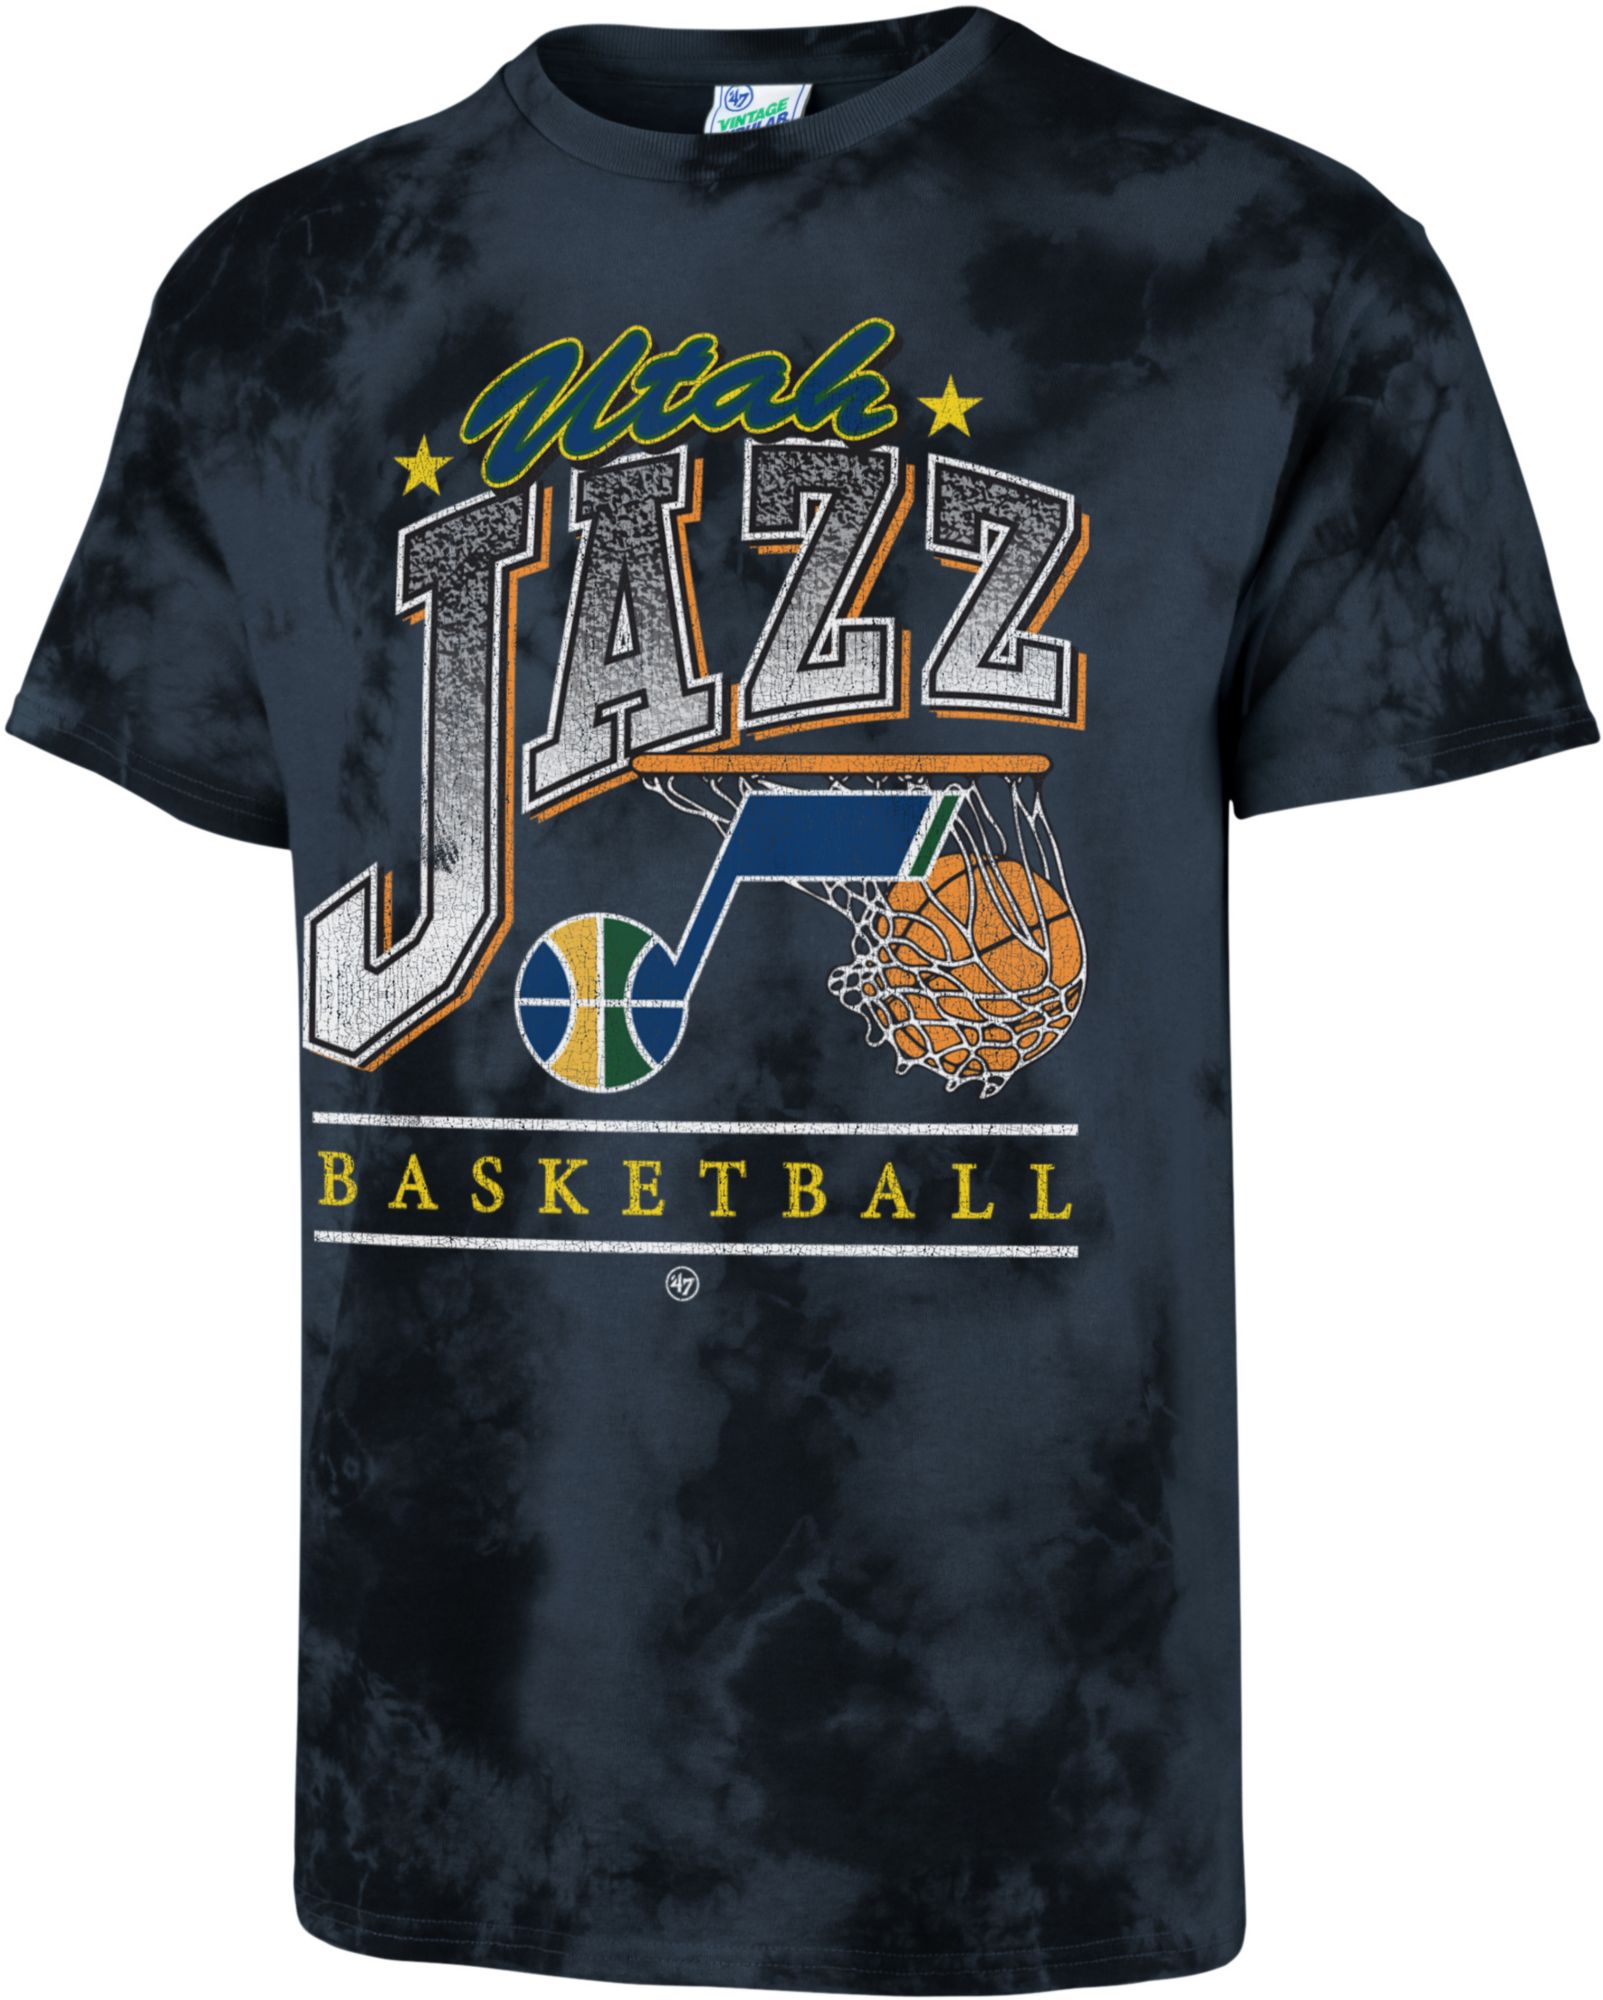 utah jazz shirts cheap